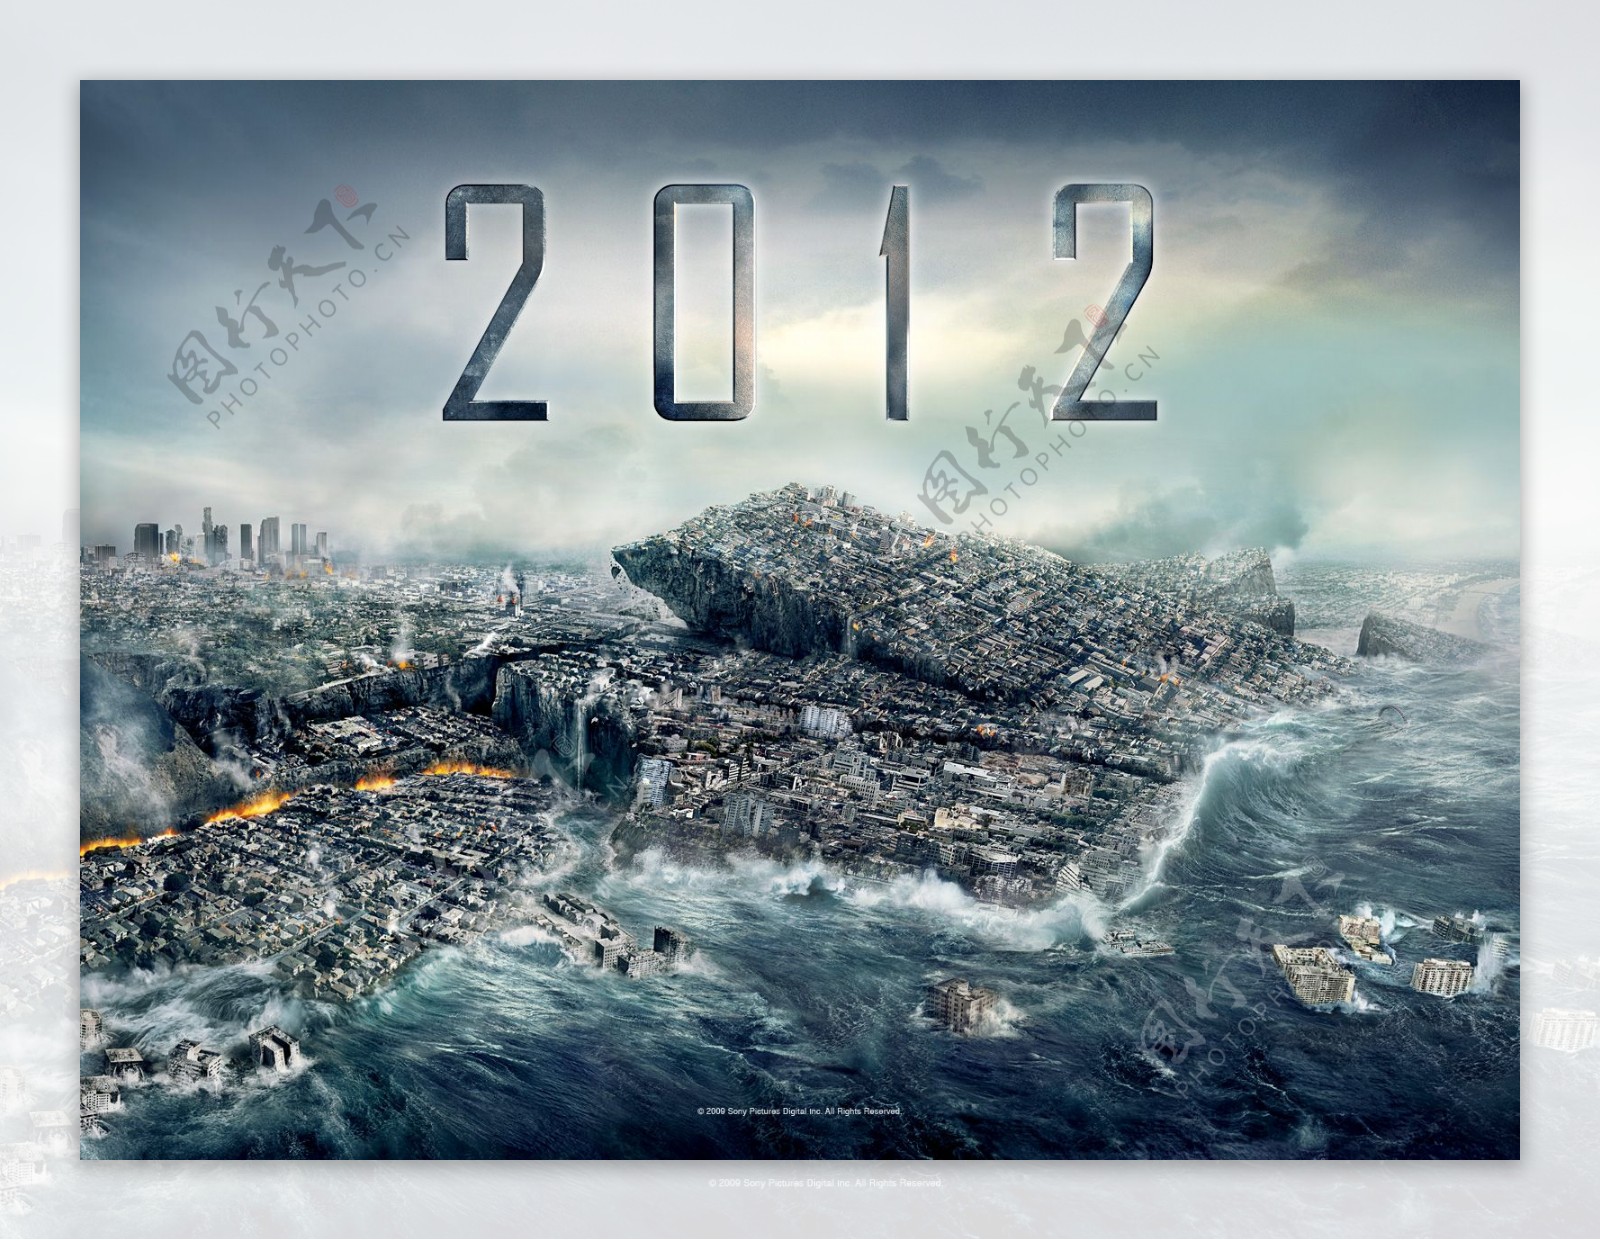 2012世界末日图片